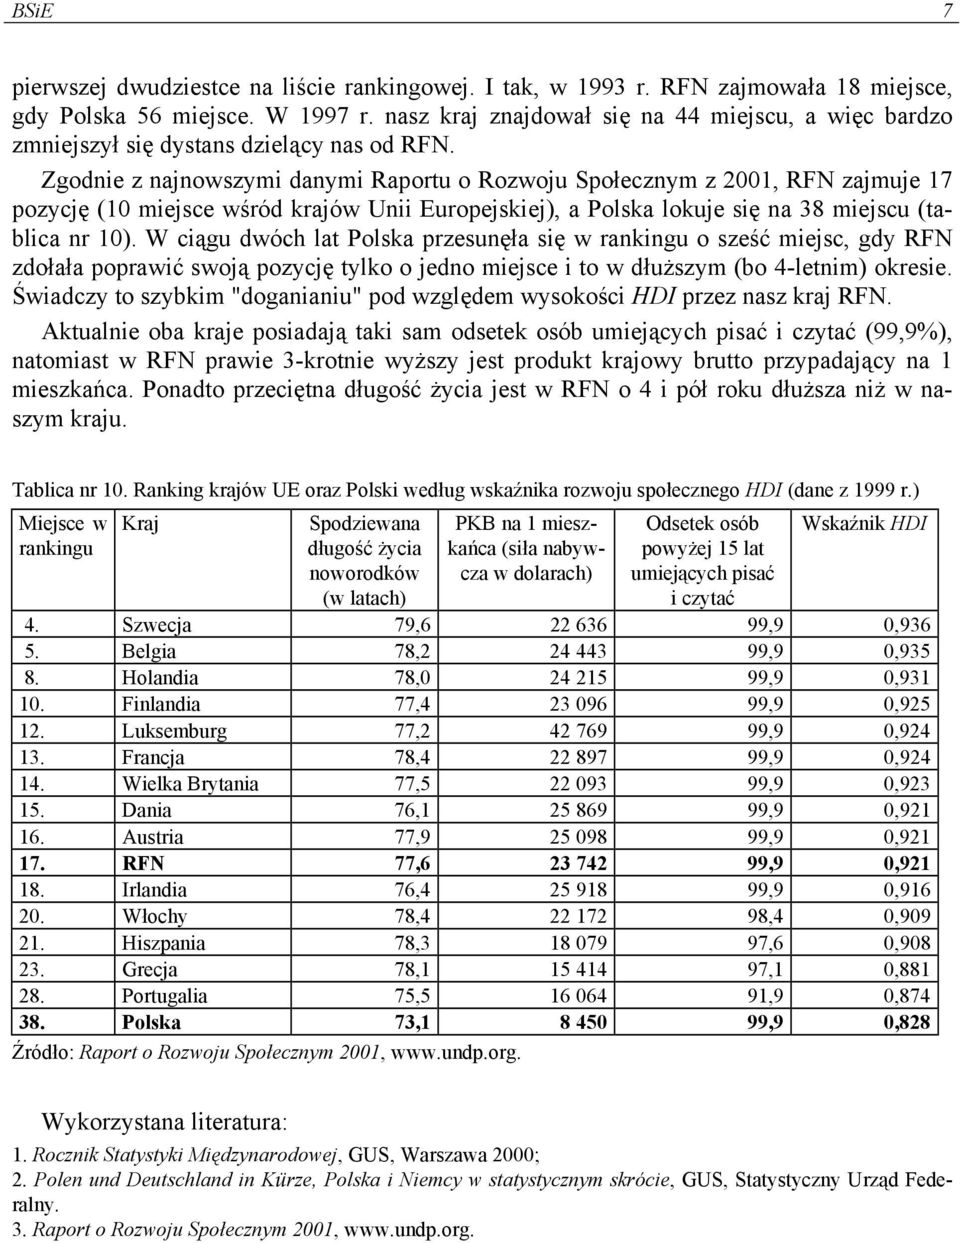 Zgodnie z najnowszymi danymi Raportu o Rozwoju Społecznym z 2001, RFN zajmuje 17 pozycję (10 miejsce wśród krajów Unii Europejskiej), a Polska lokuje się na 38 miejscu (tablica nr 10).